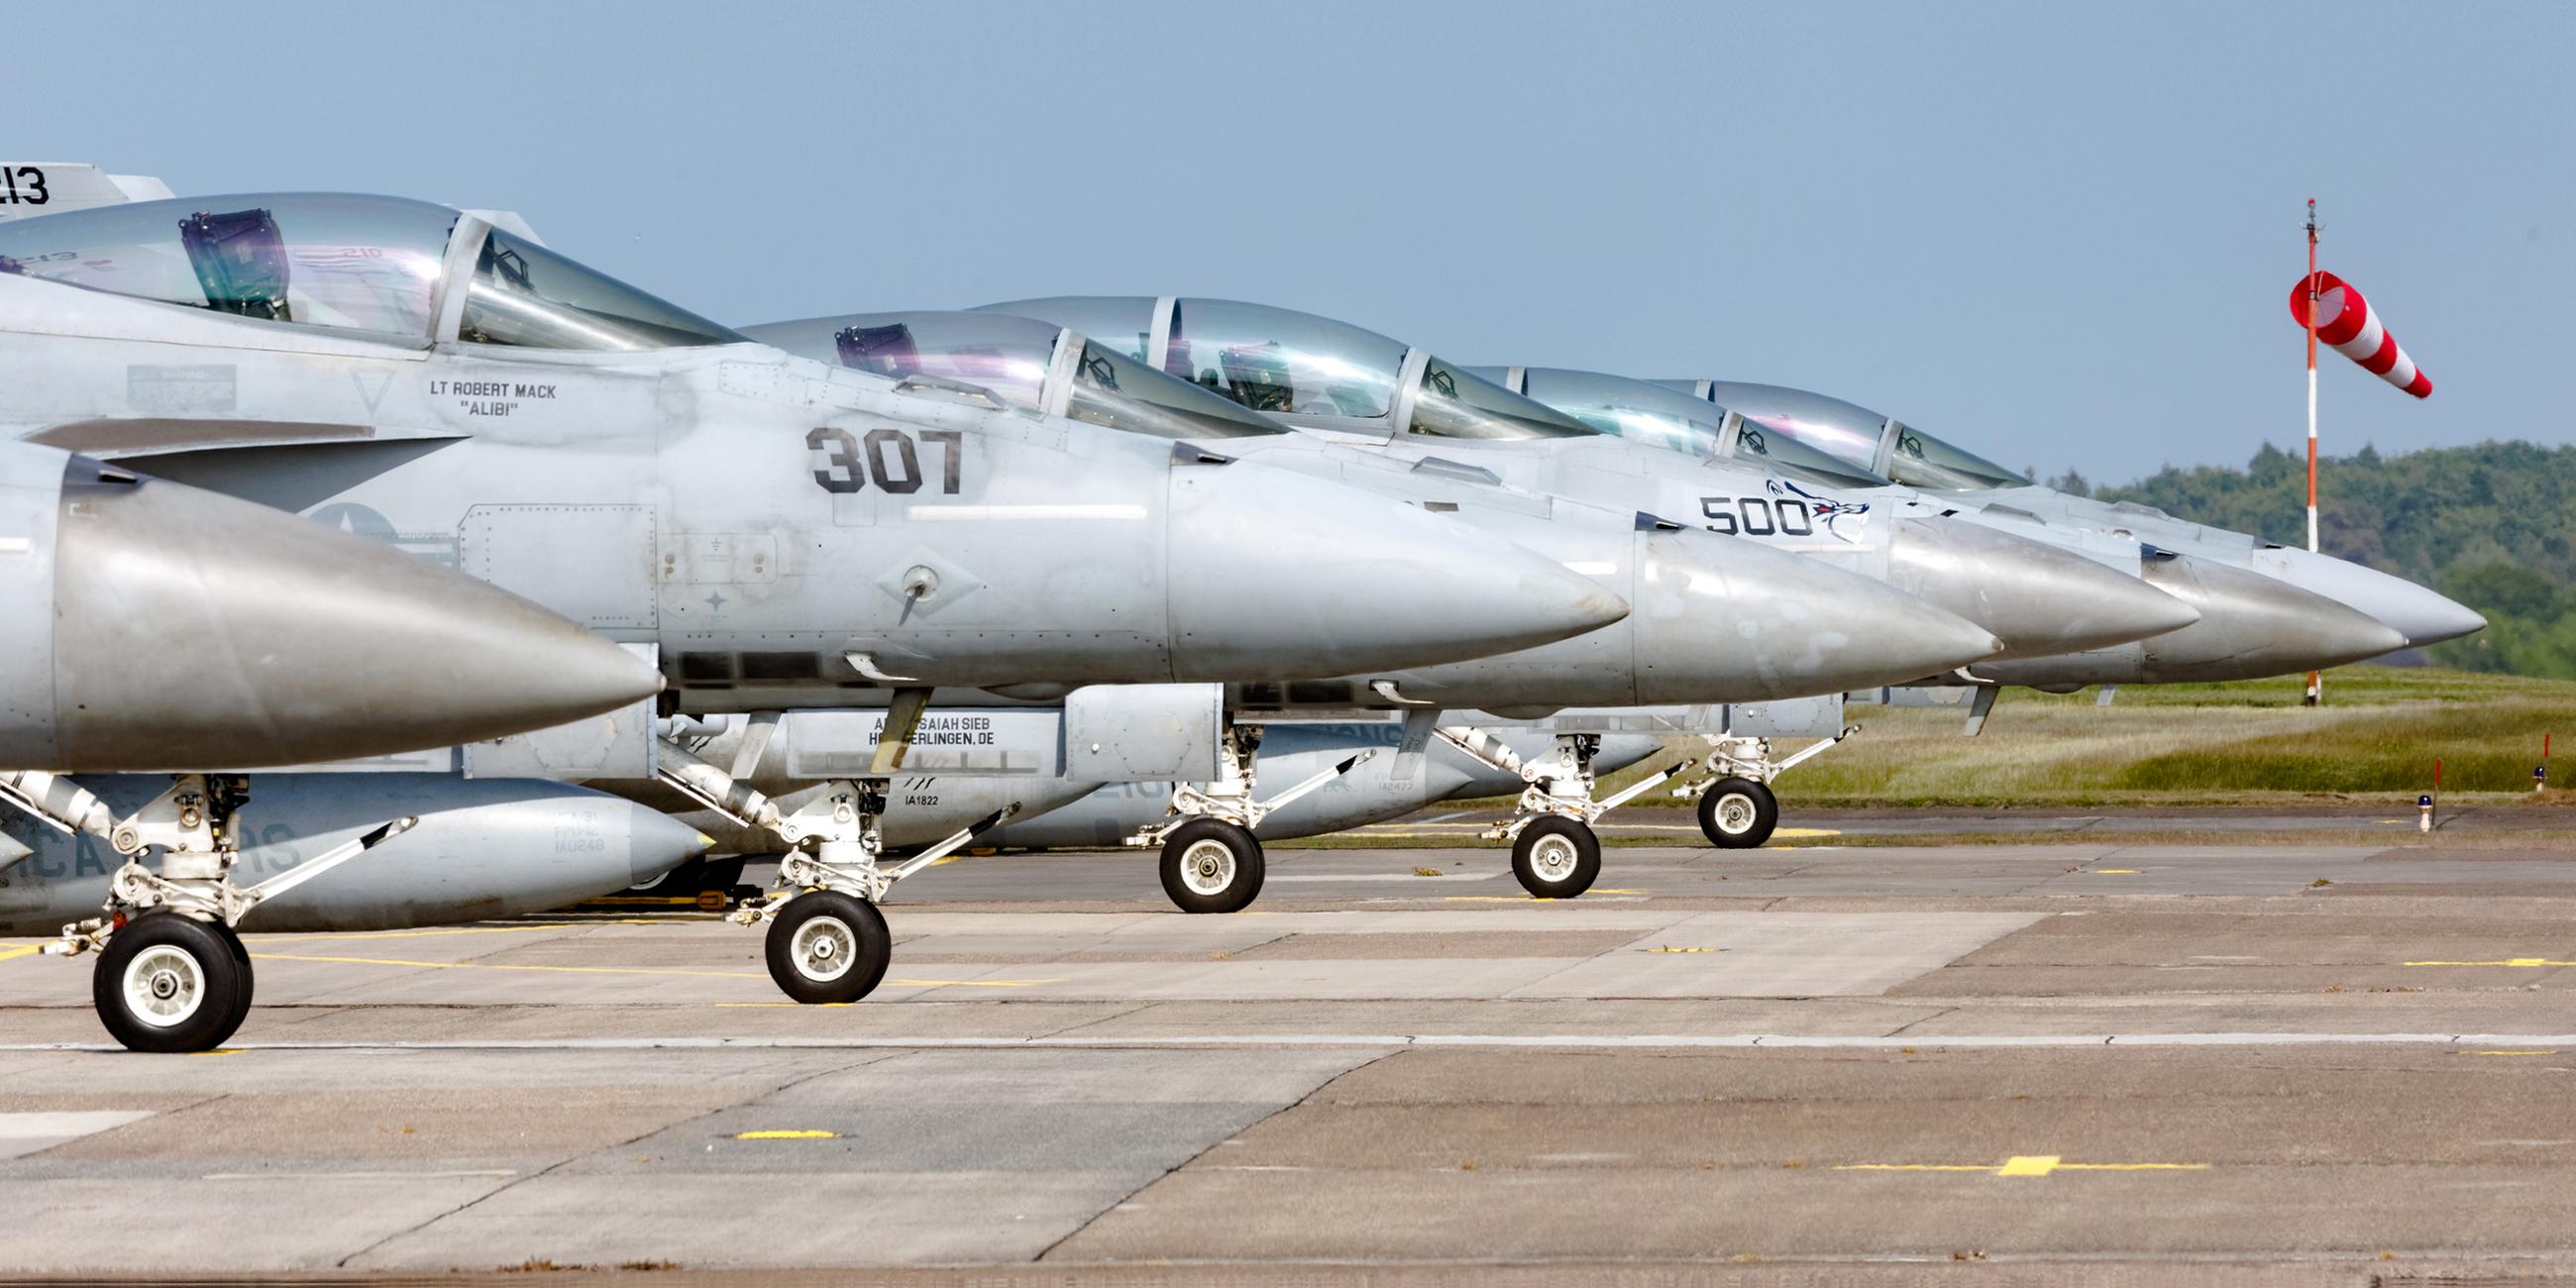 Jets vom Typ F18 der US Marine parken auf dem Luftwaffenstützpunkt Hohn